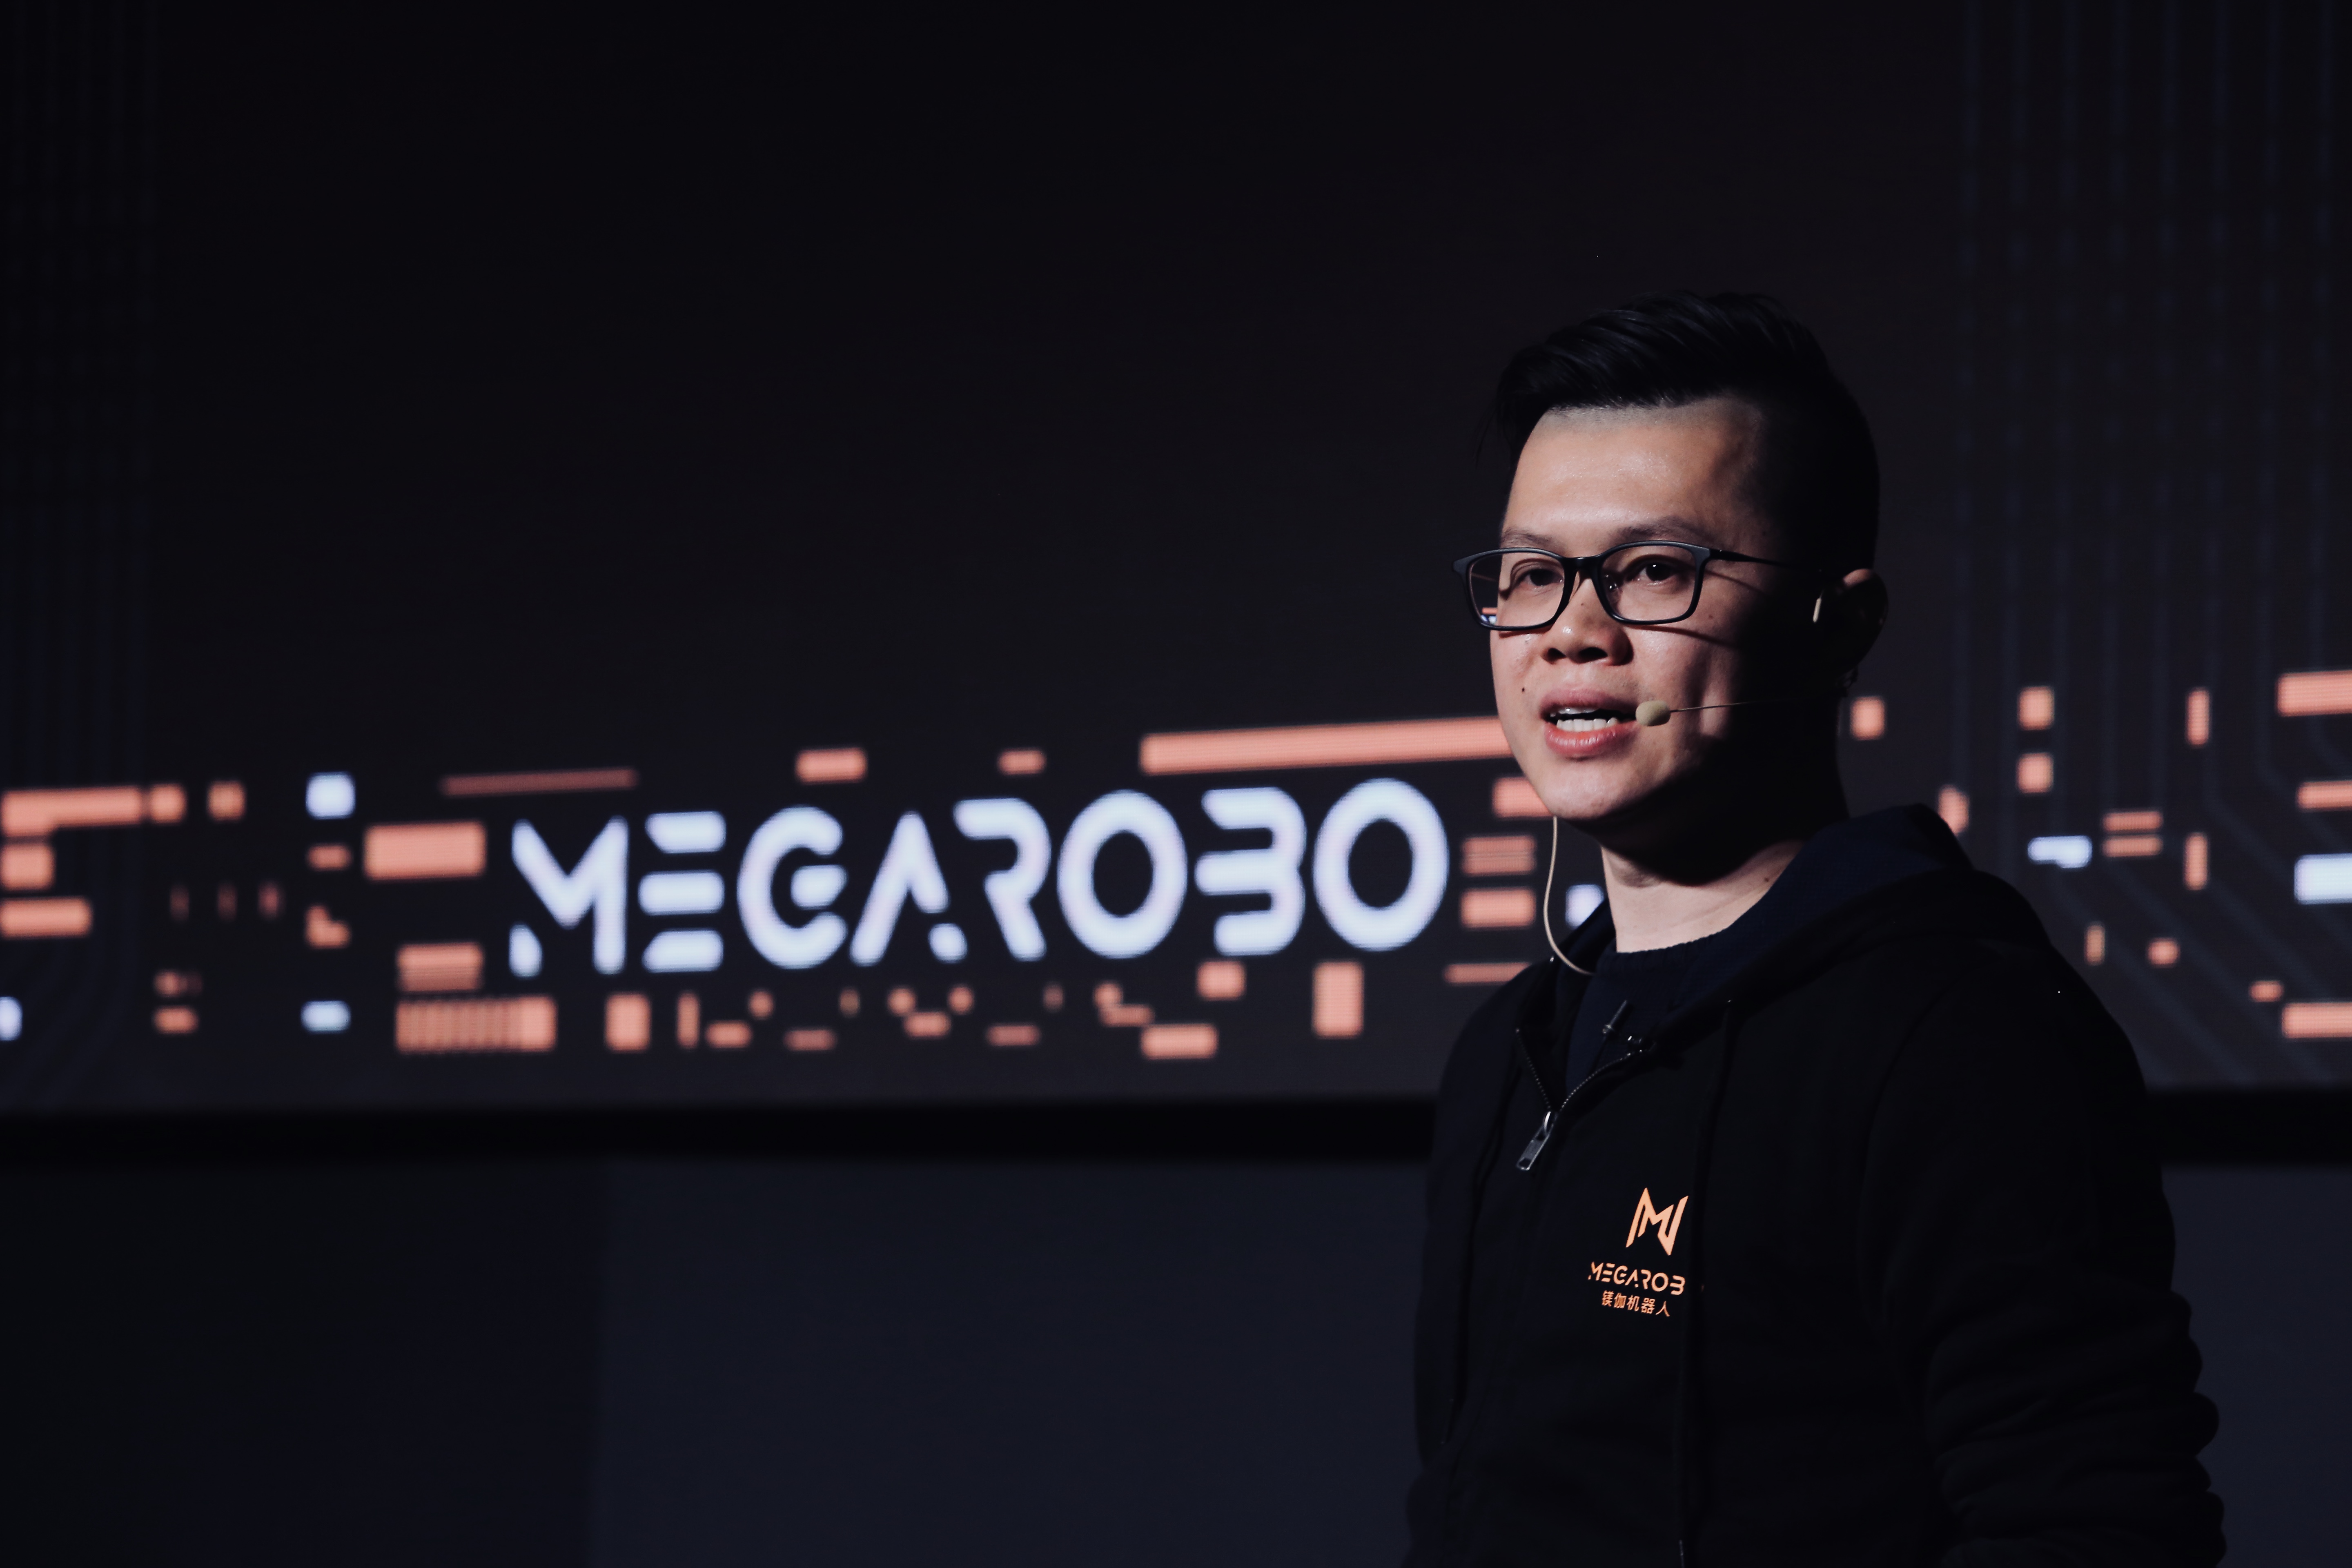 MegaRobo CEO Daniel Huang